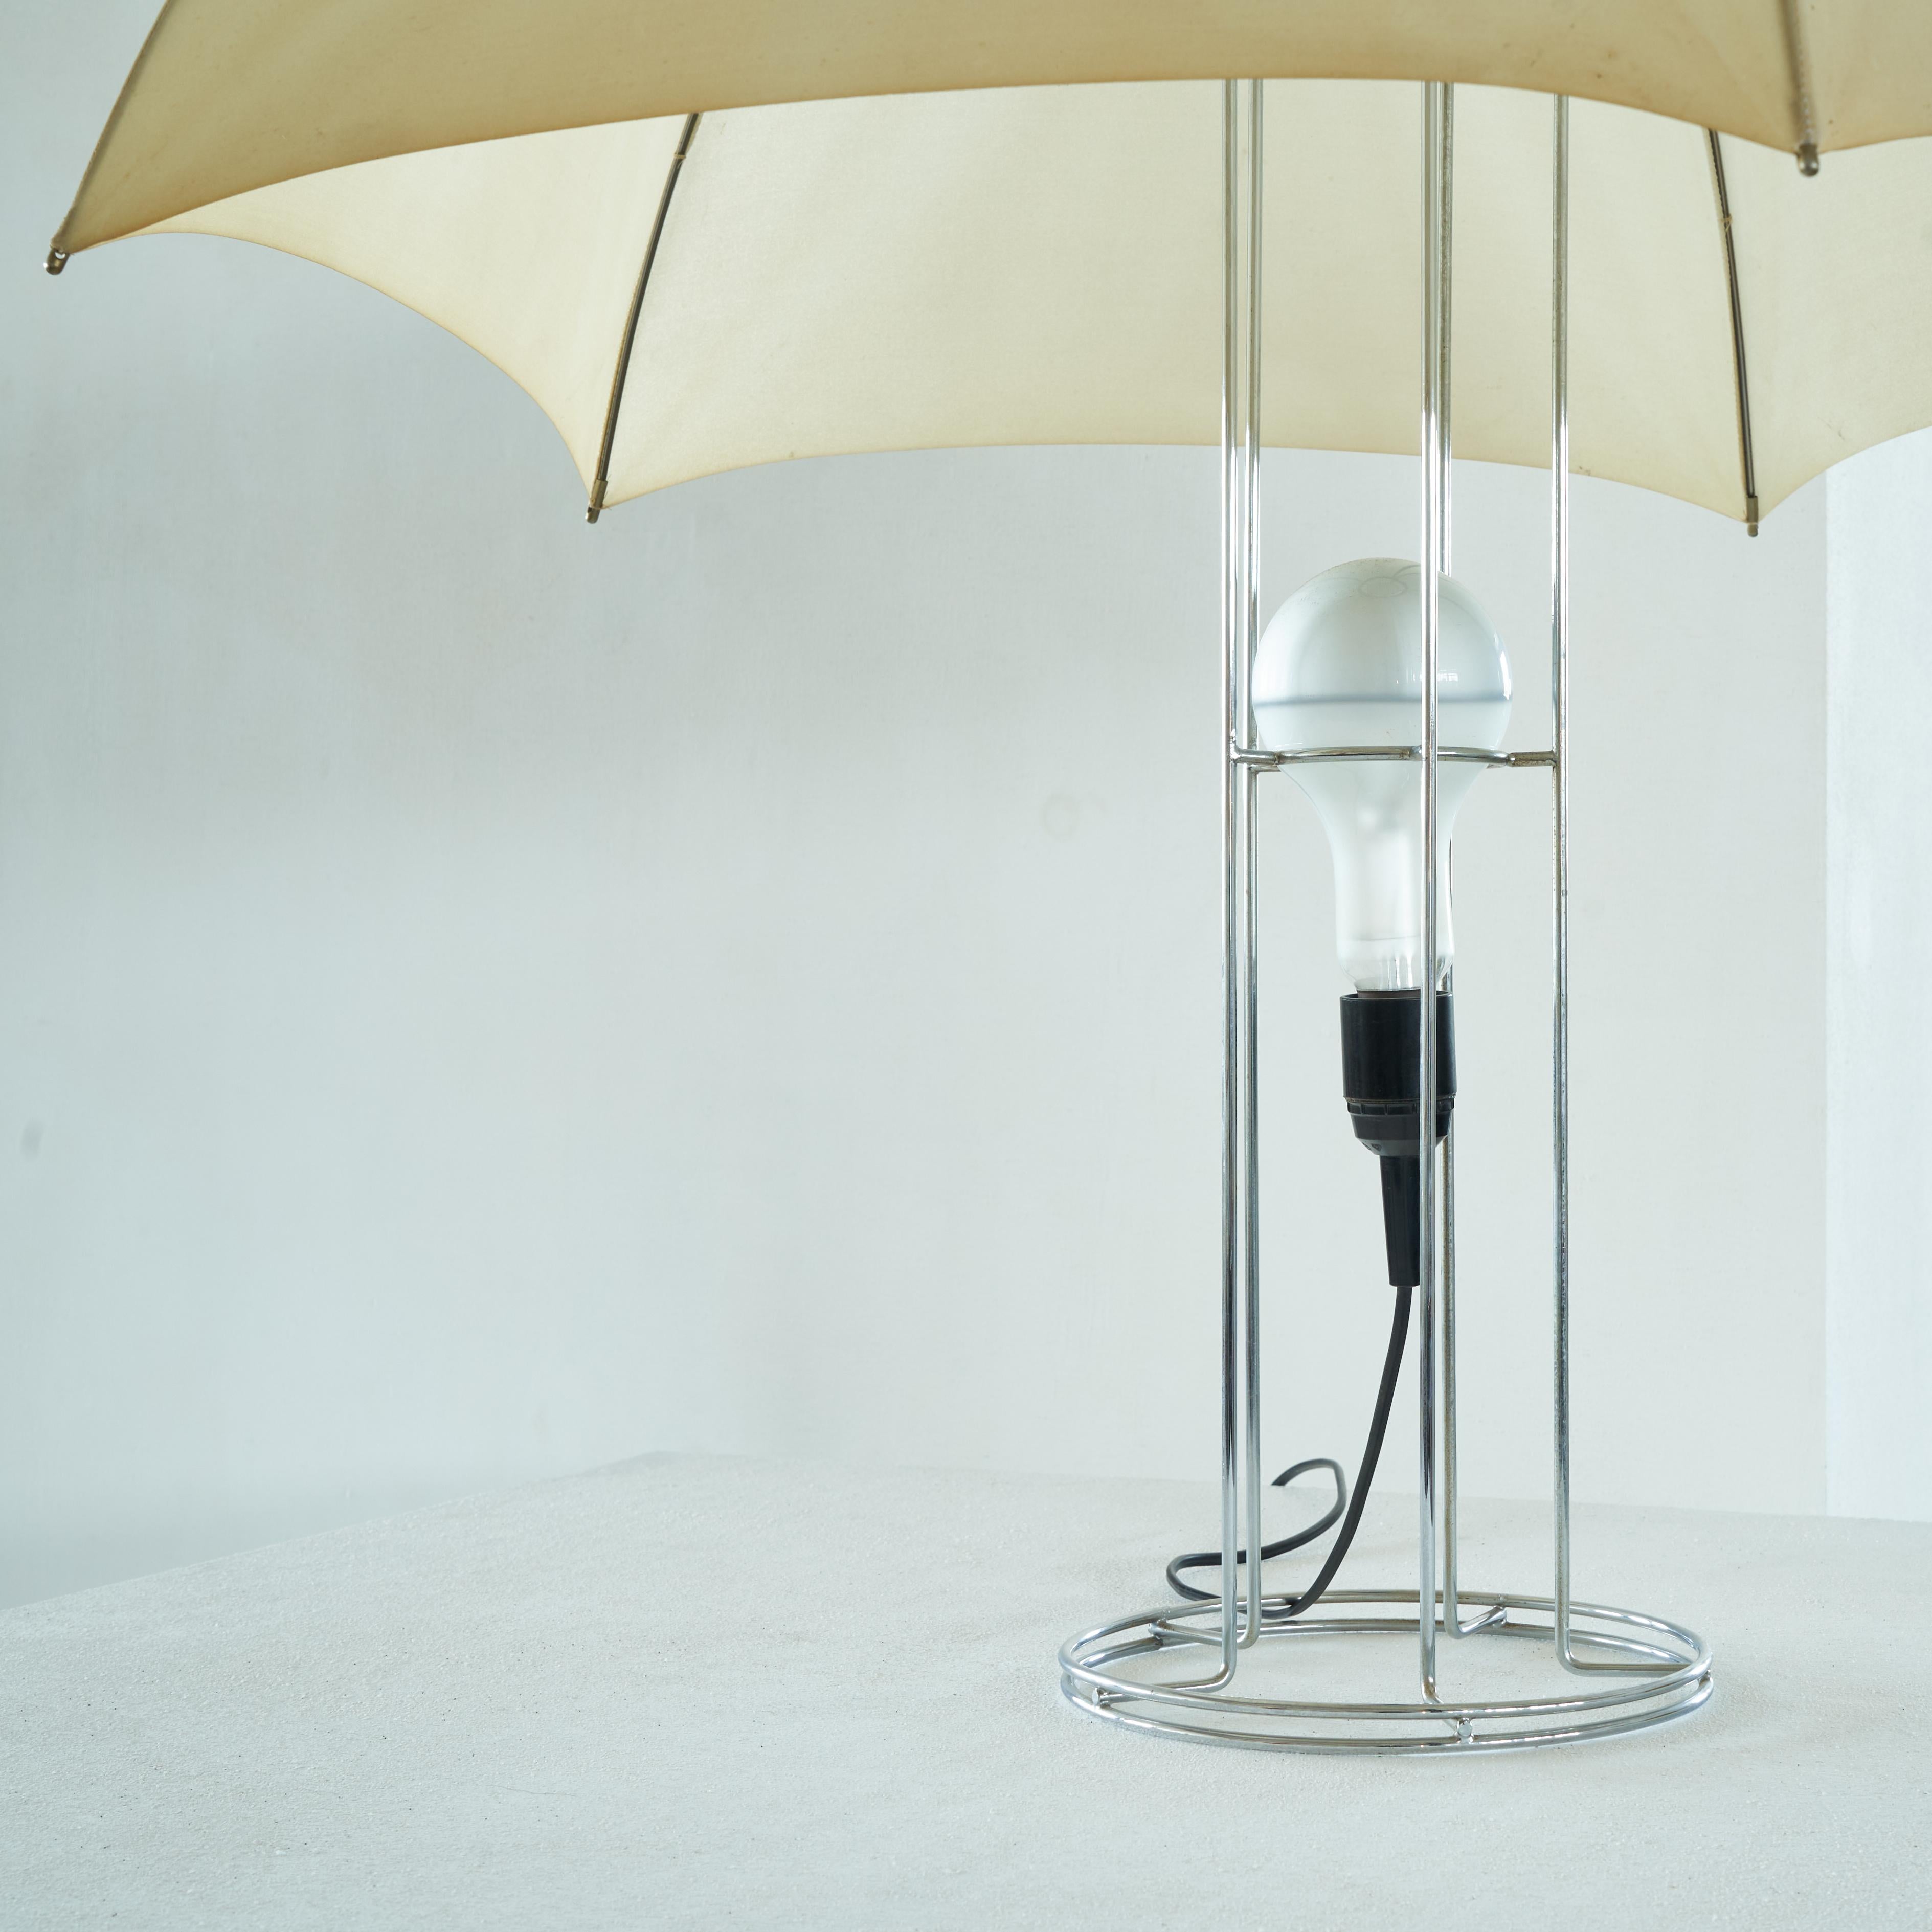 Fabric Gijs Bakker Umbrella Table Lamp for Artimeta 1973 For Sale